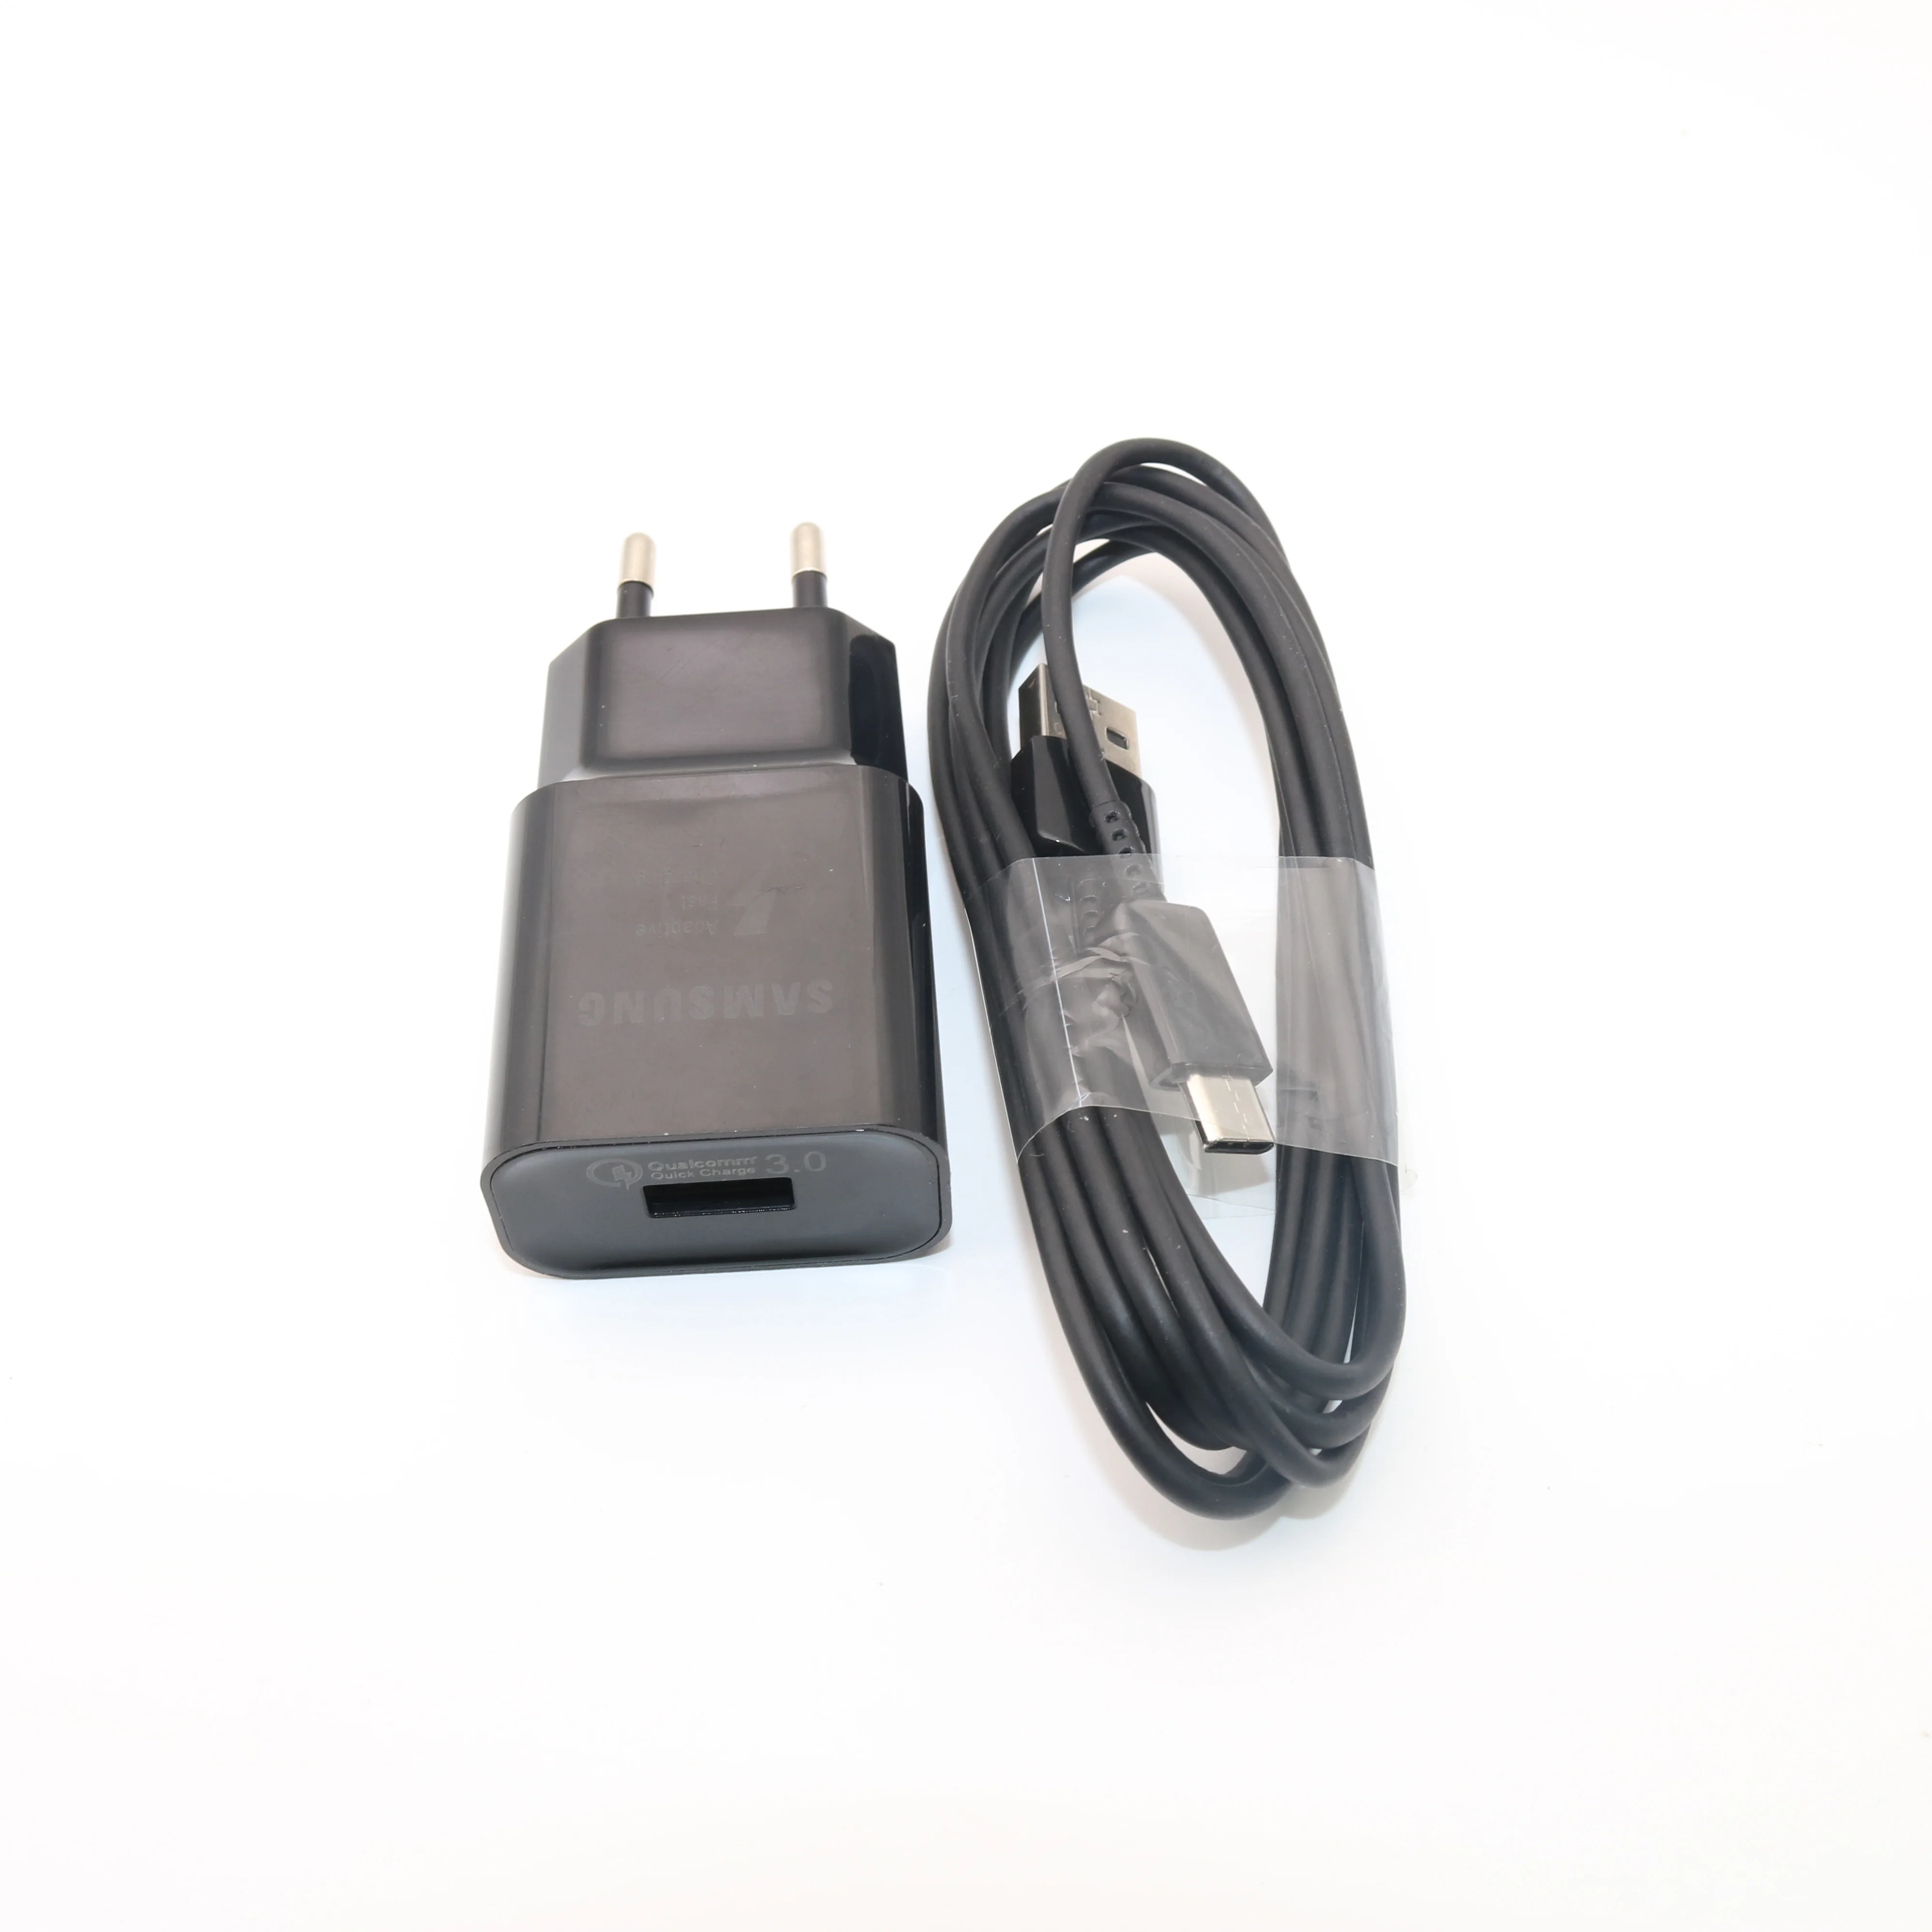 Samsung Оригинальное Адаптивное быстрое зарядное устройство USB быстрый адаптер 1,2/1,5 M type C кабель для Galaxy S8 S9 Plus Note 8 9 A3 A5 A7 - Тип штекера: Add 2m Cable